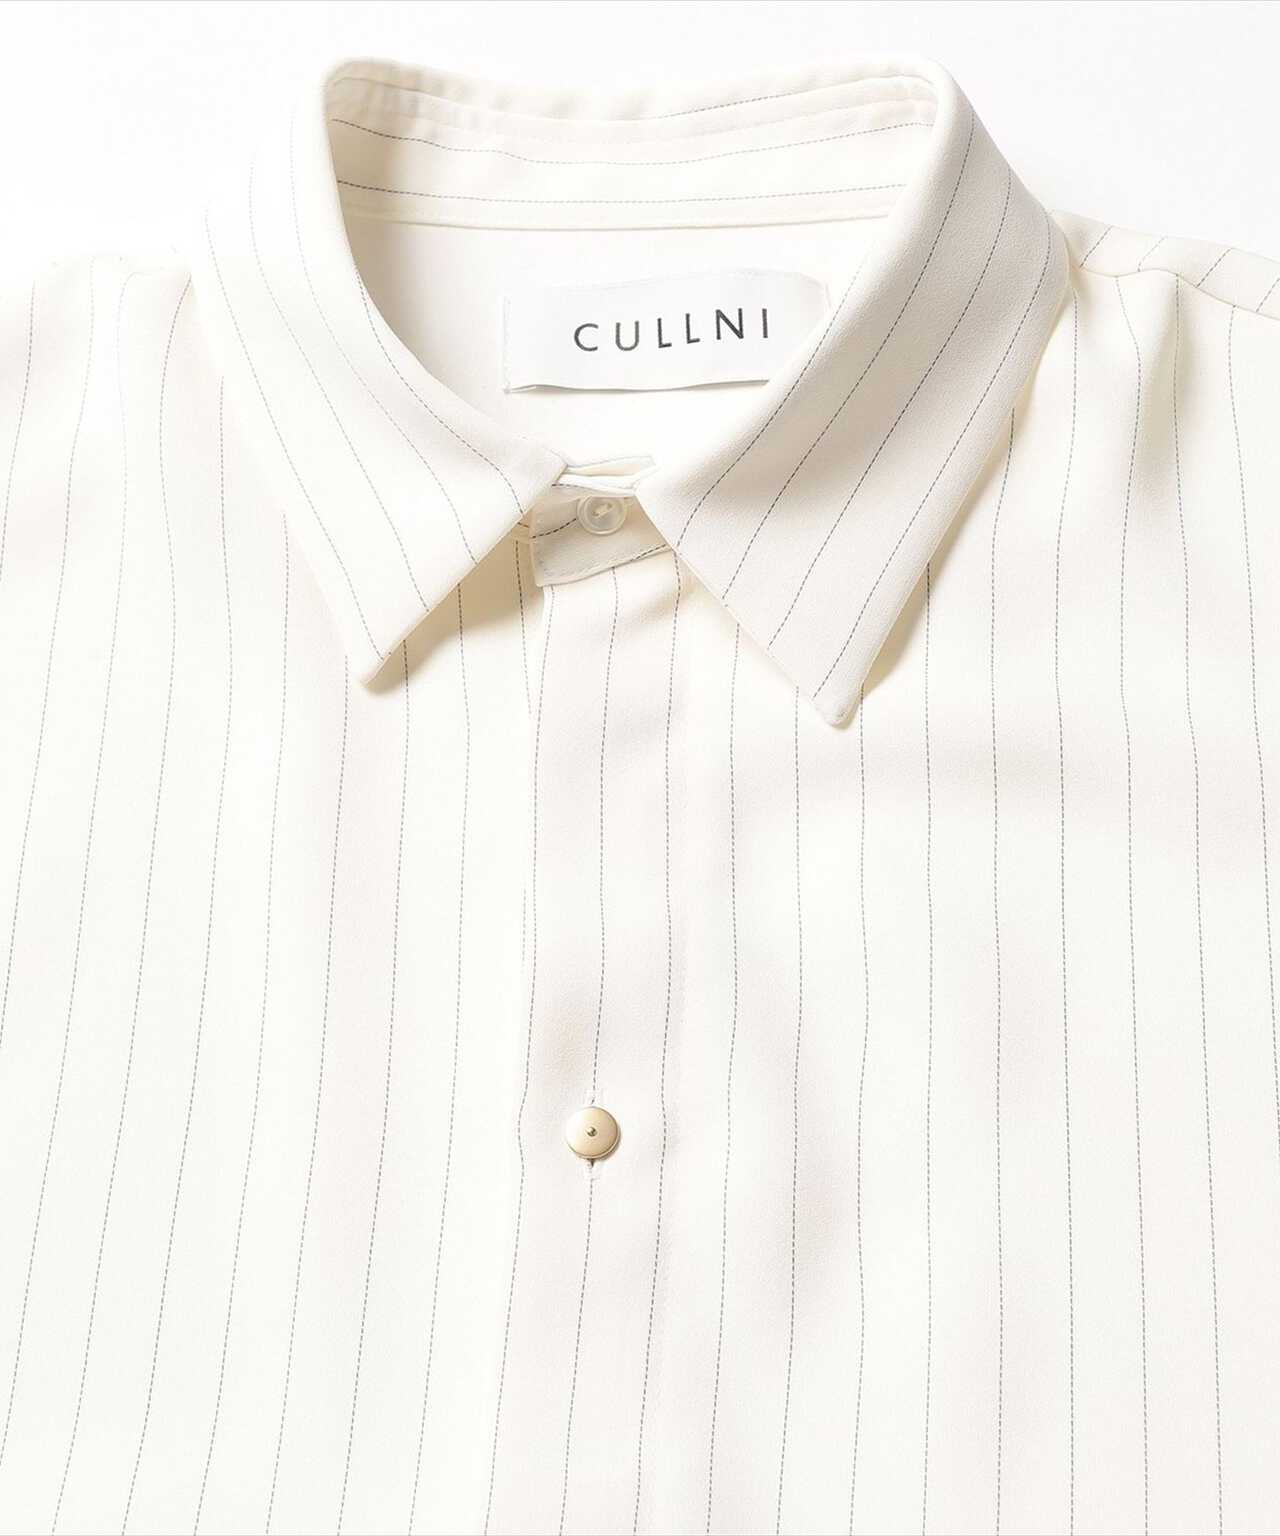 輝く高品質な CULLNI レイヤード シャツ サイズ2 www.instantupright.com